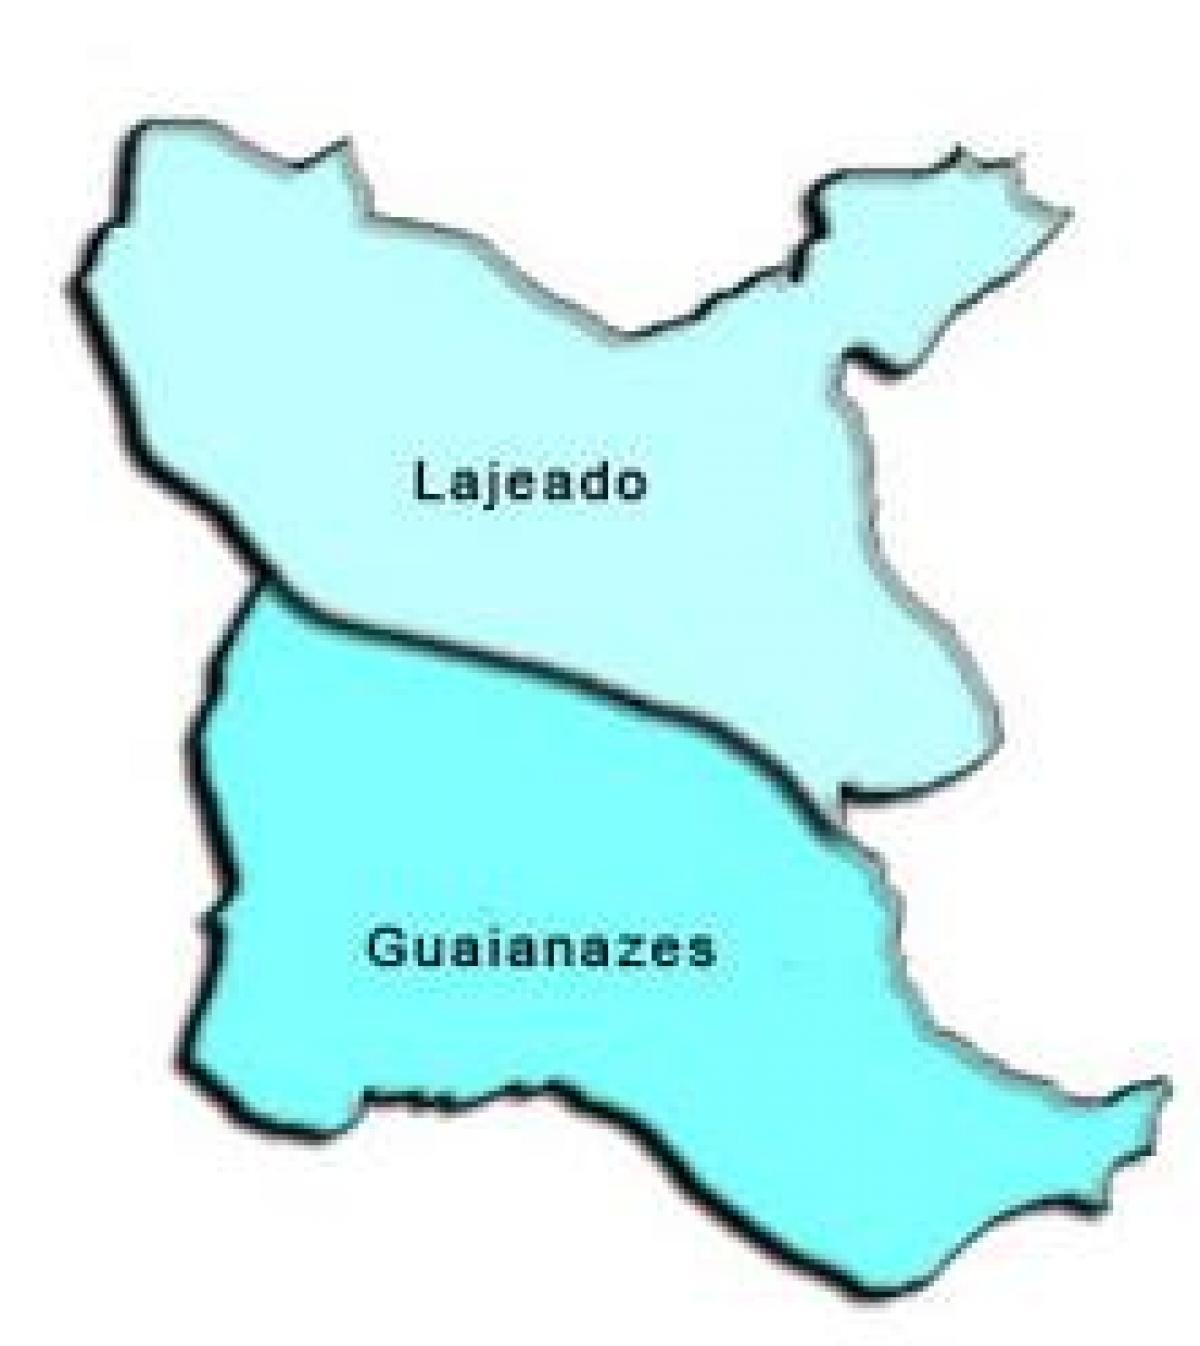 Kort over Guaianases sub-præfekturet